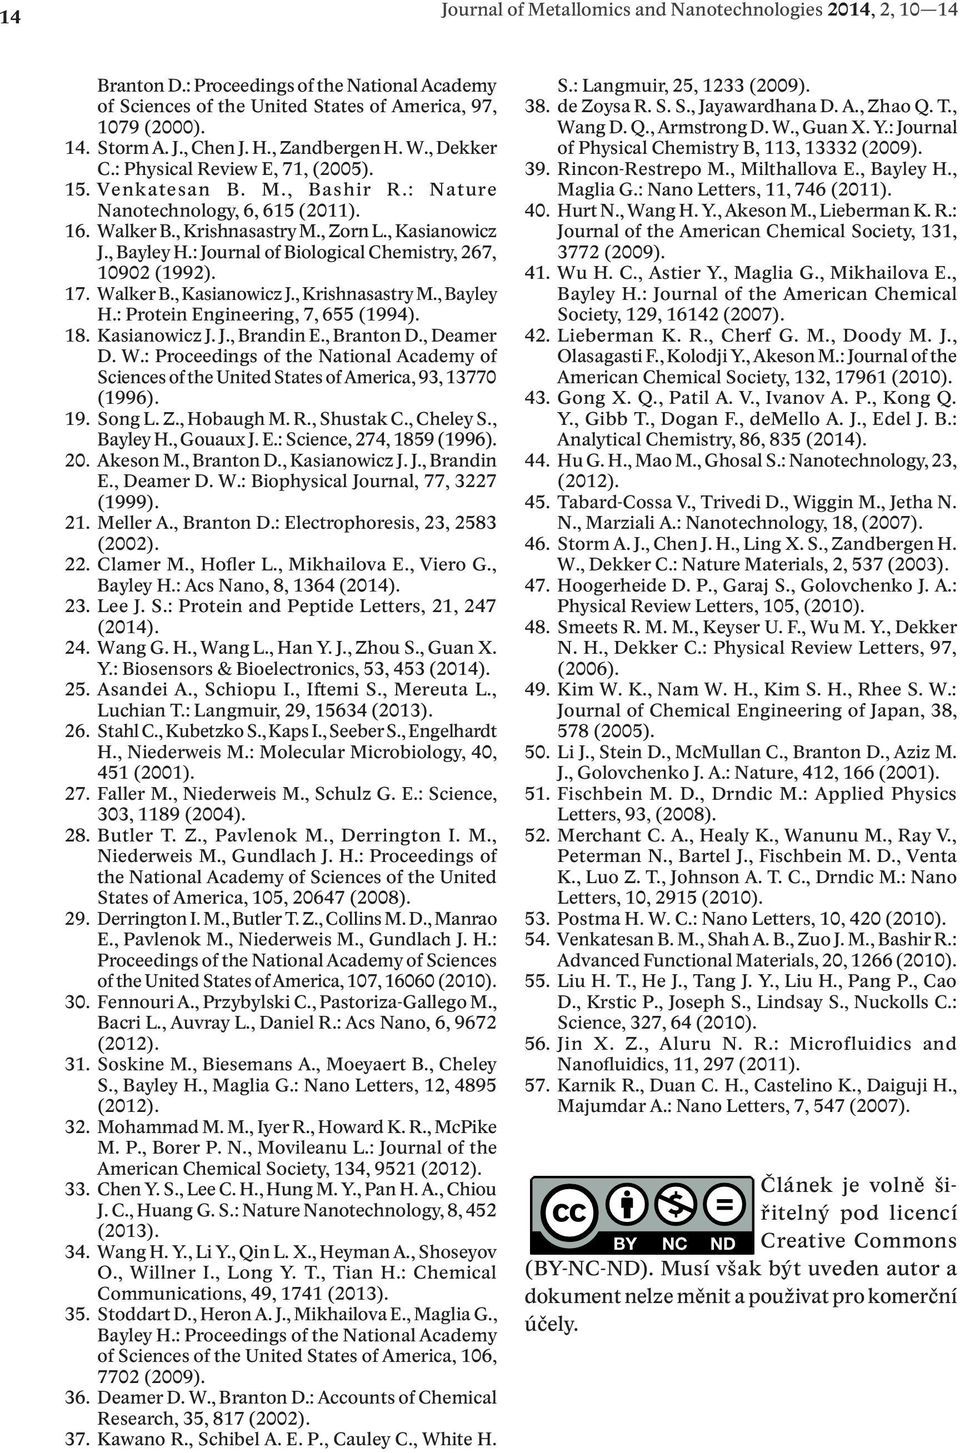 : Journal of Biological Chemistry, 267, 10902 (1992). 17. Walker B., Kasianowicz J., Krishnasastry M., Bayley H.: Protein Engineering, 7, 655 (1994). 18. Kasianowicz J. J., Brandin E., Branton D.